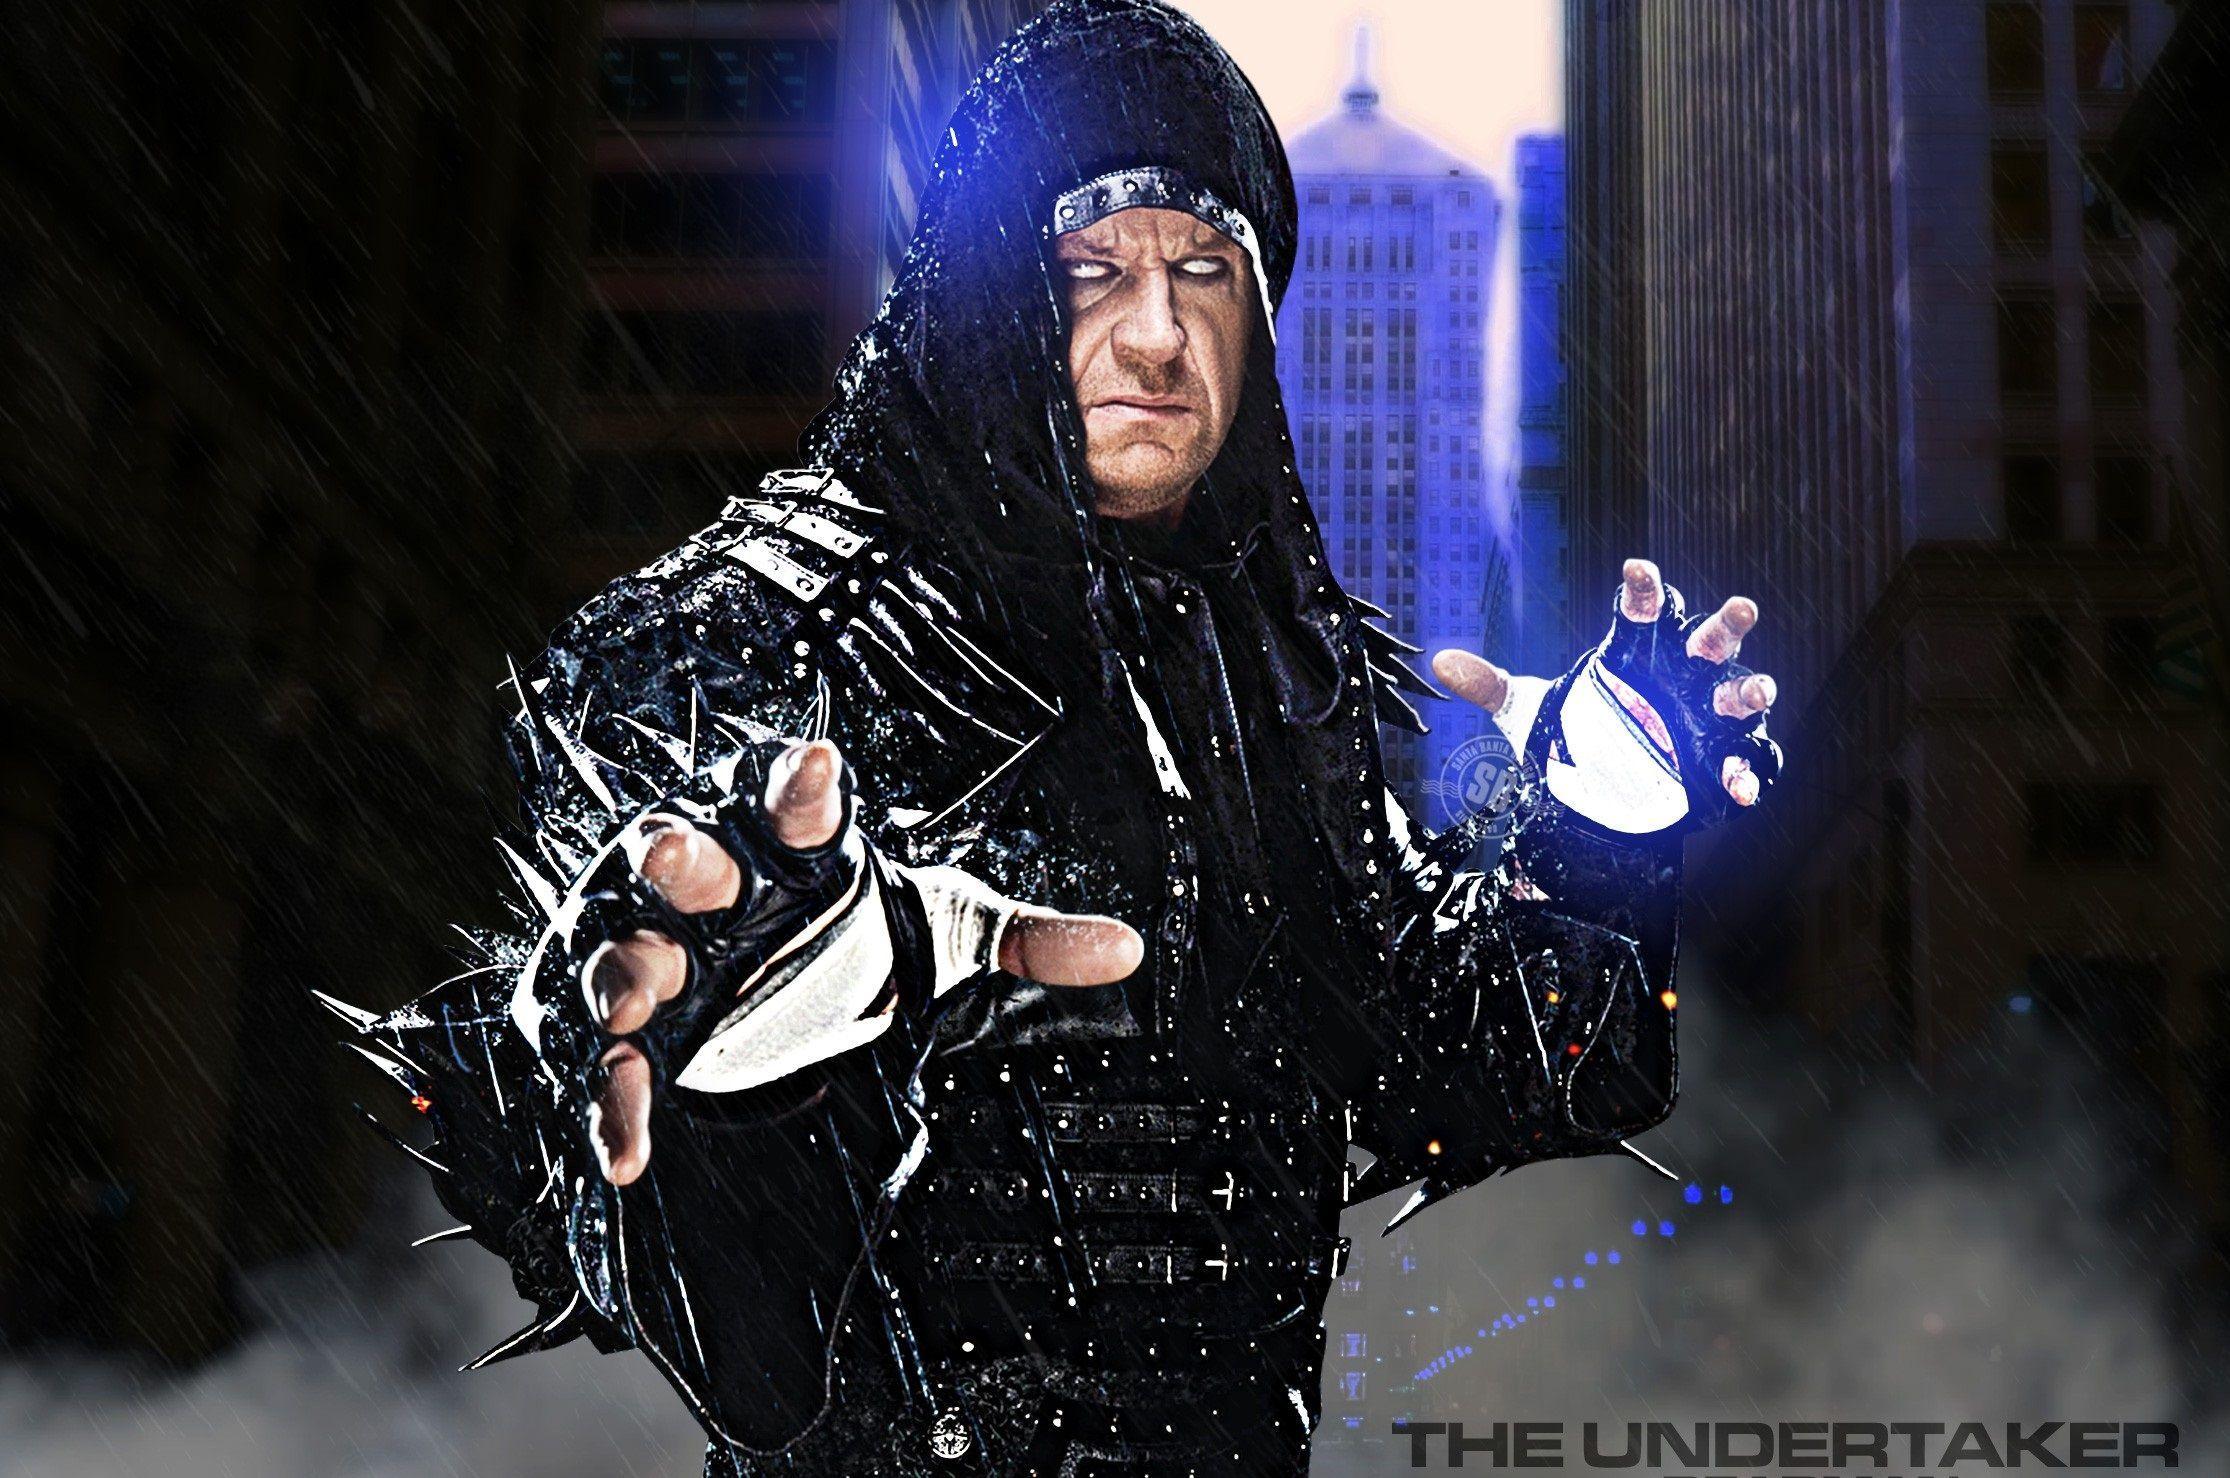 Undertaker Wallpaper HD: Find best latest Undertaker Wallpaper HD